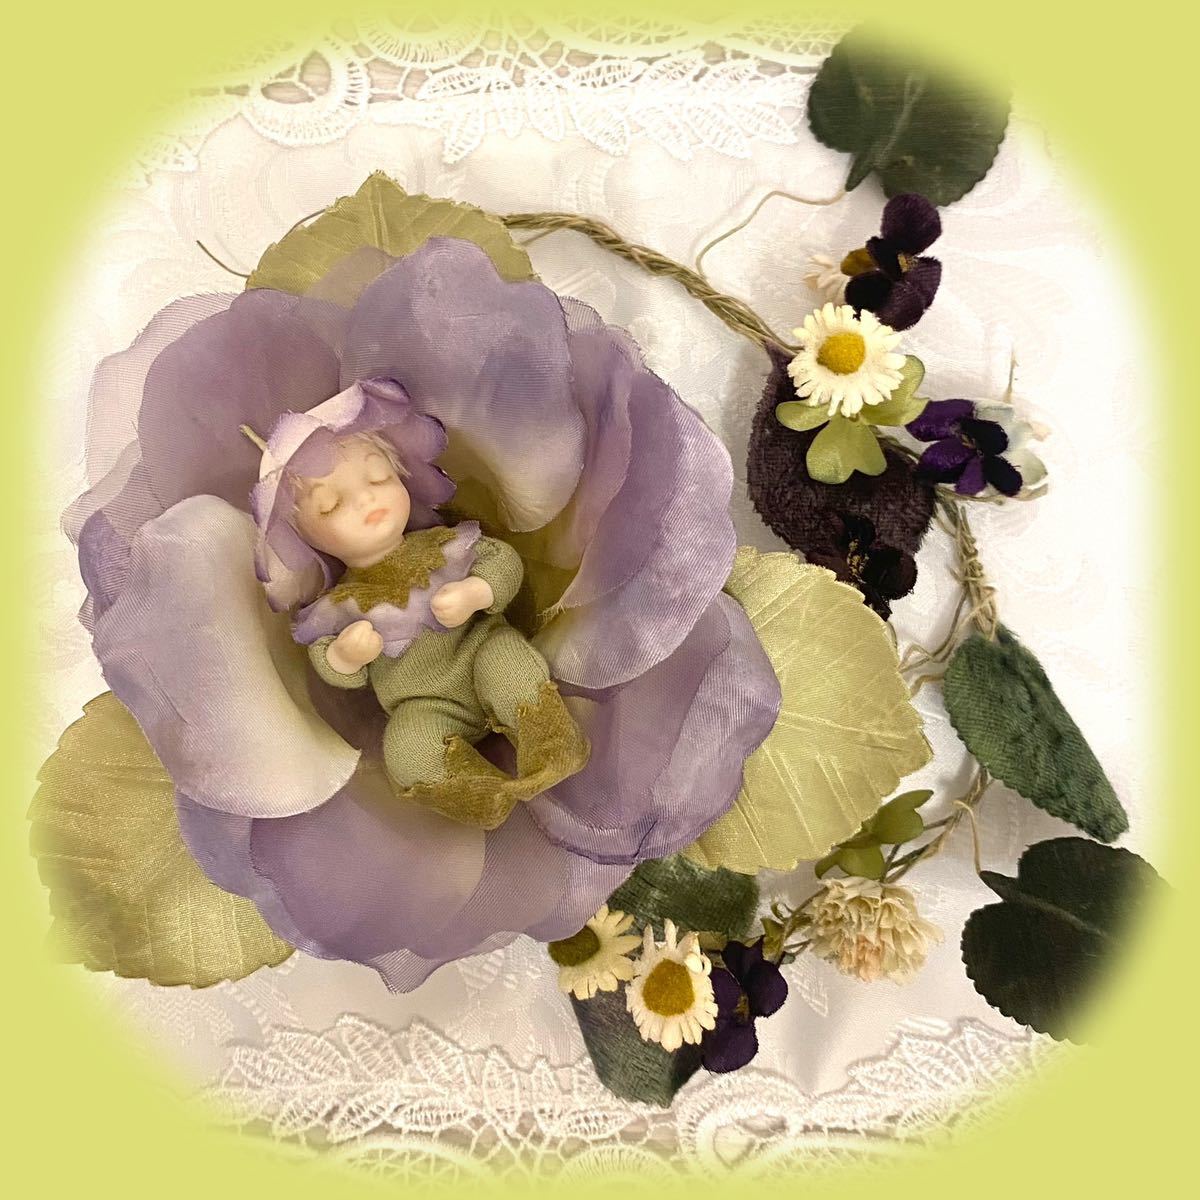 若月まり子 ベビーエルフィン オルゴール SANKYO花の妖精人形 ビスクドール 創作人形 ポーセリン 陶器 フラワーフェアリー